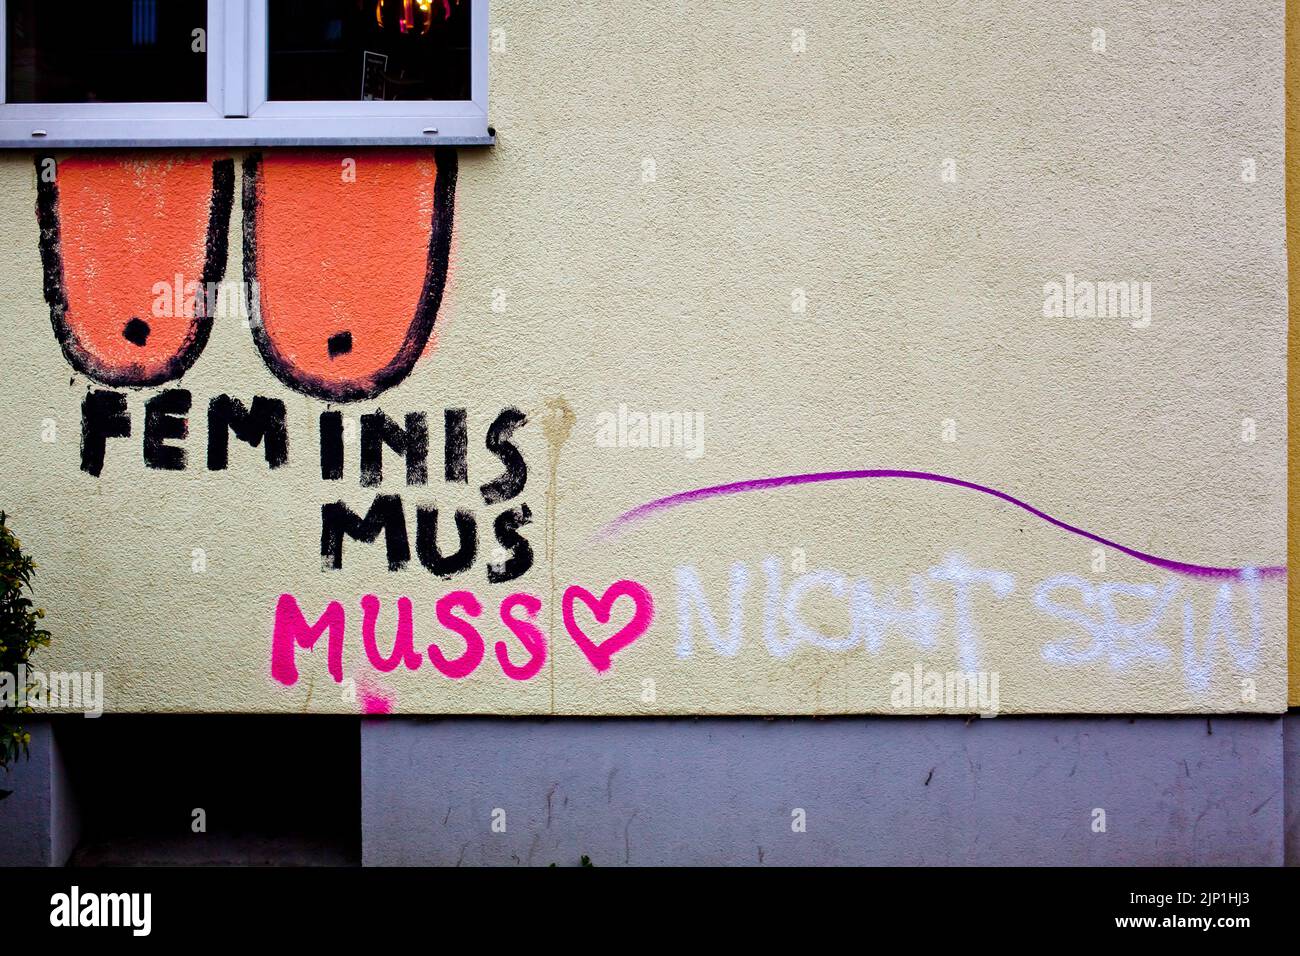 embassy, feminism, feminismus muss, misogynie, embassies Stock Photo